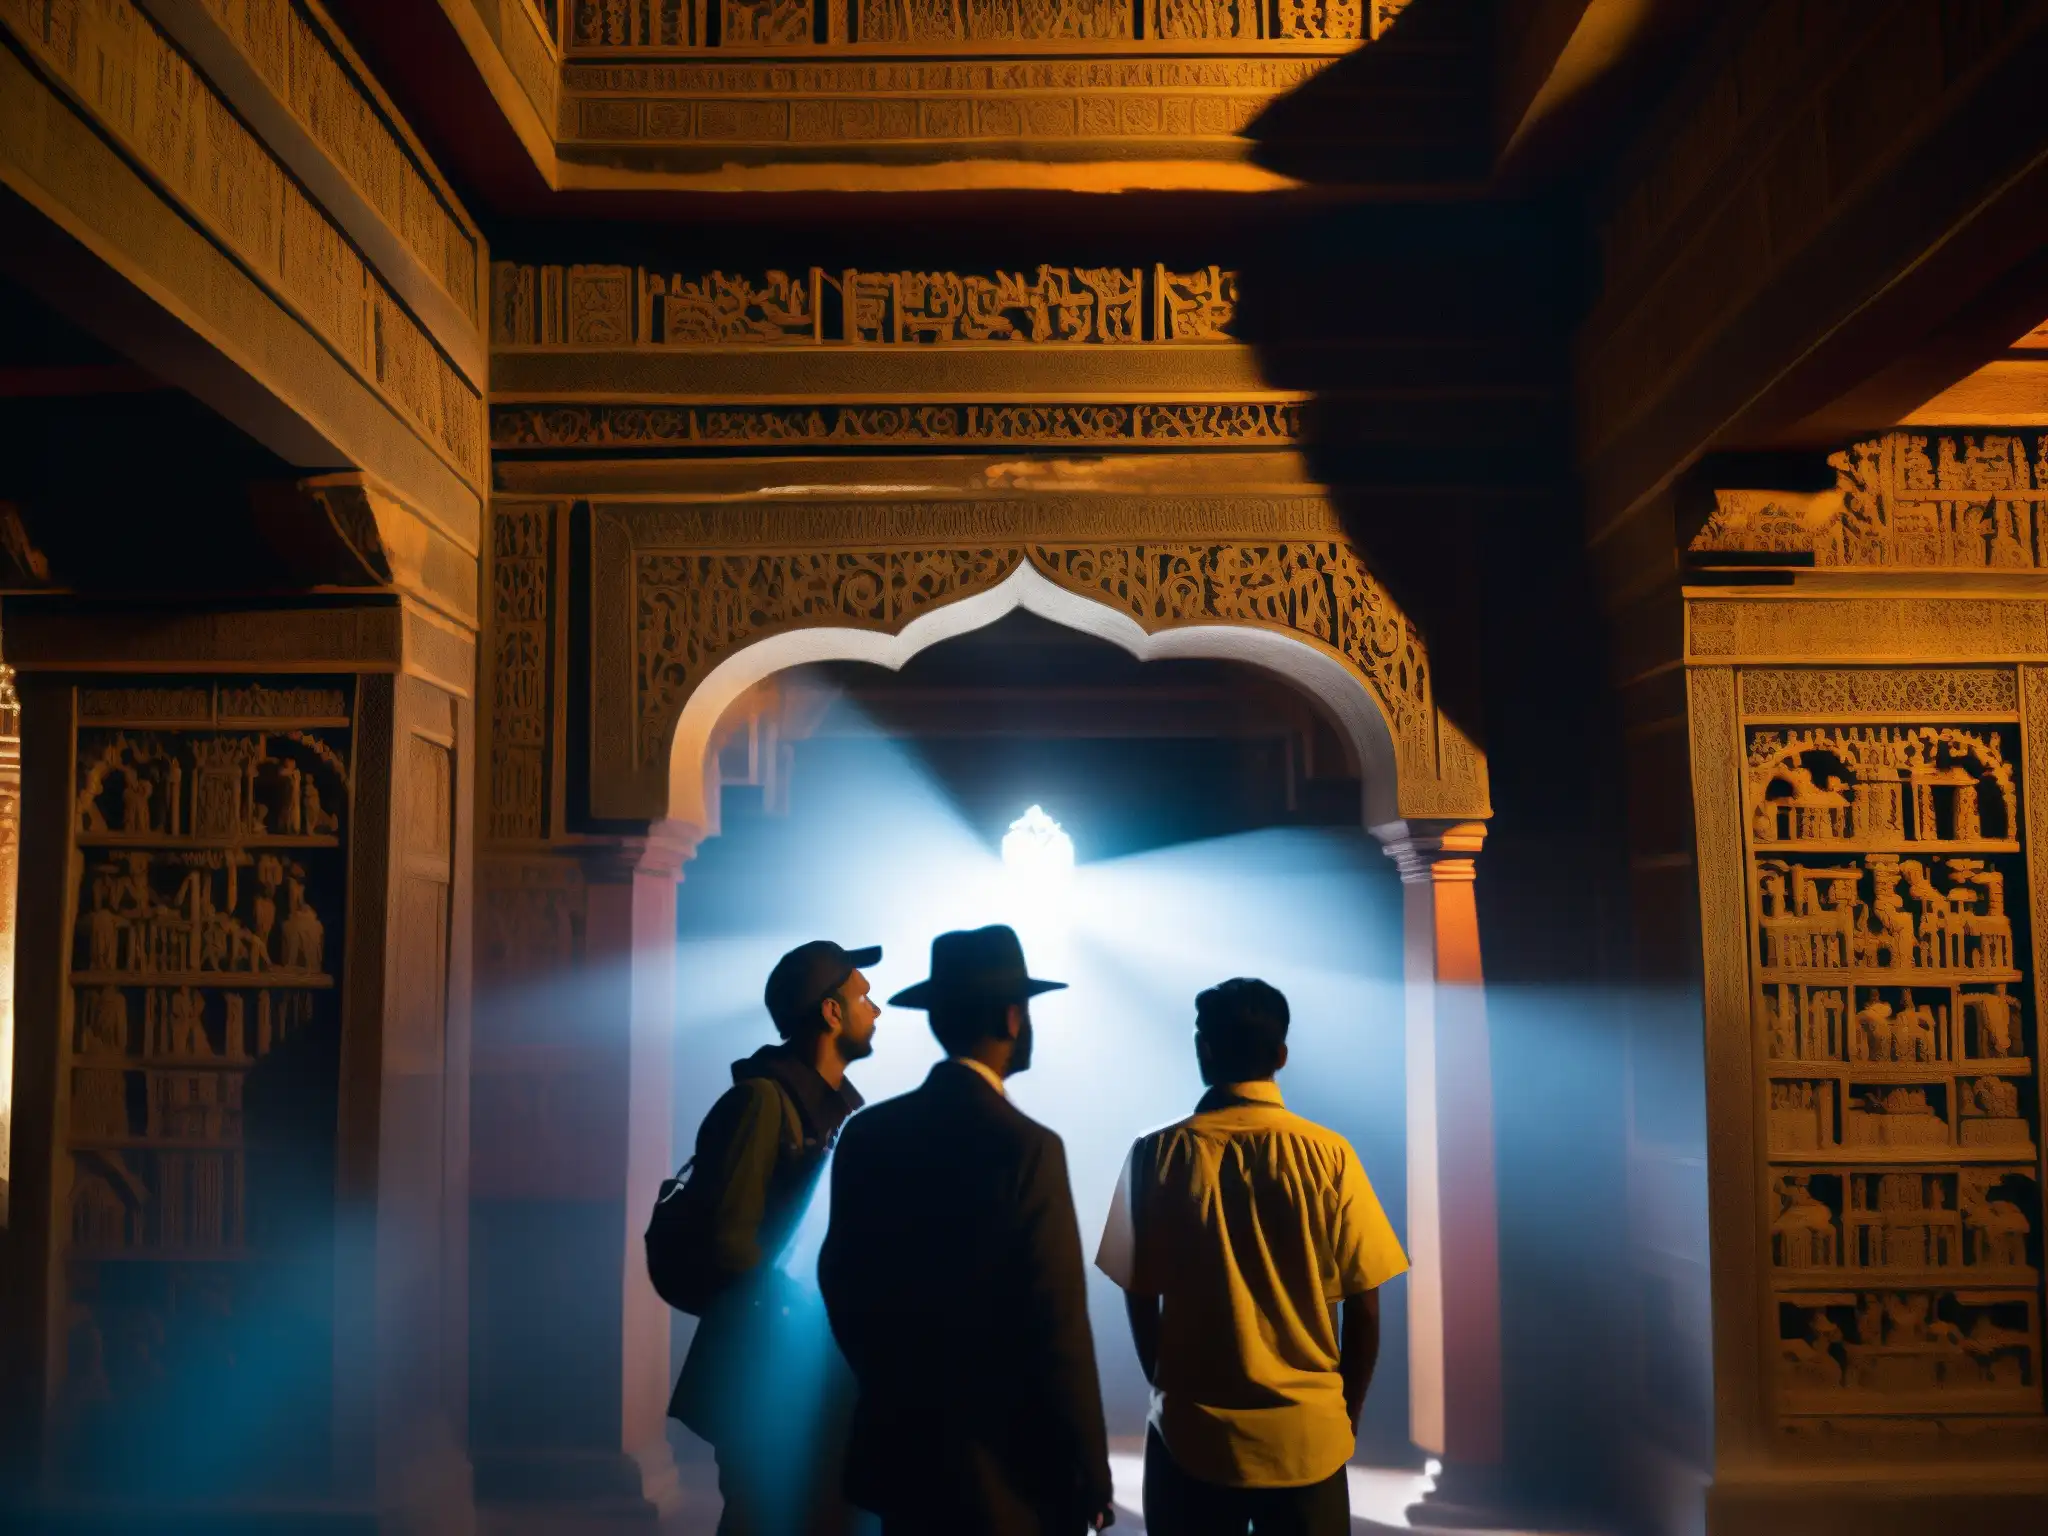 Grupo de investigadores explorando fenómenos paranormales en un palacio antiguo en Nepal, con expresiones de intriga y asombro